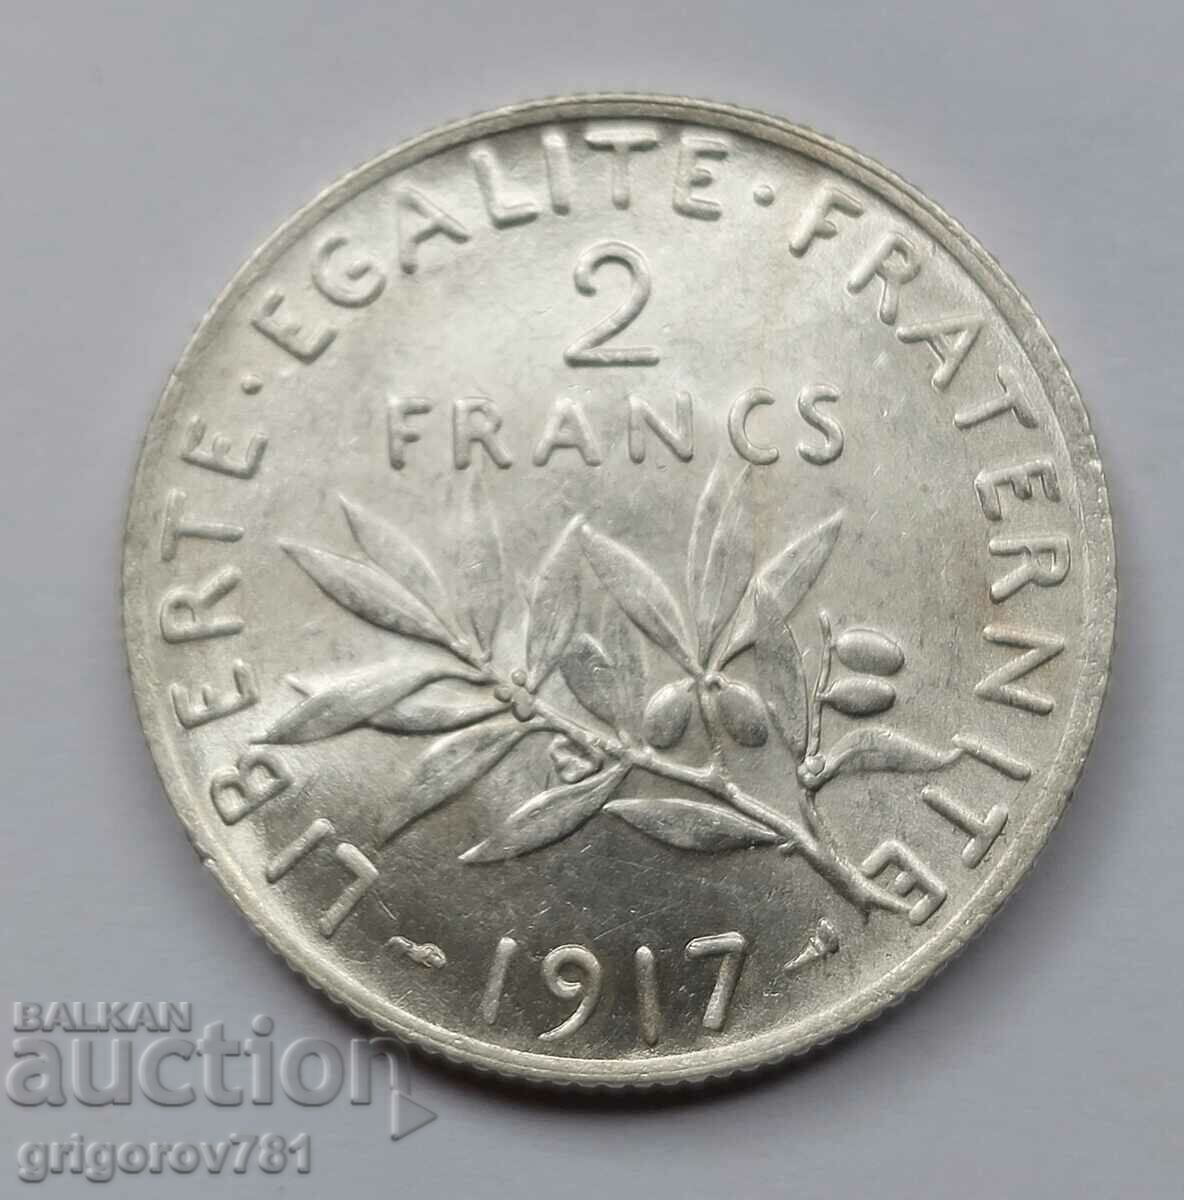 2 Franci Argint Franta 1917 - Moneda de argint #129